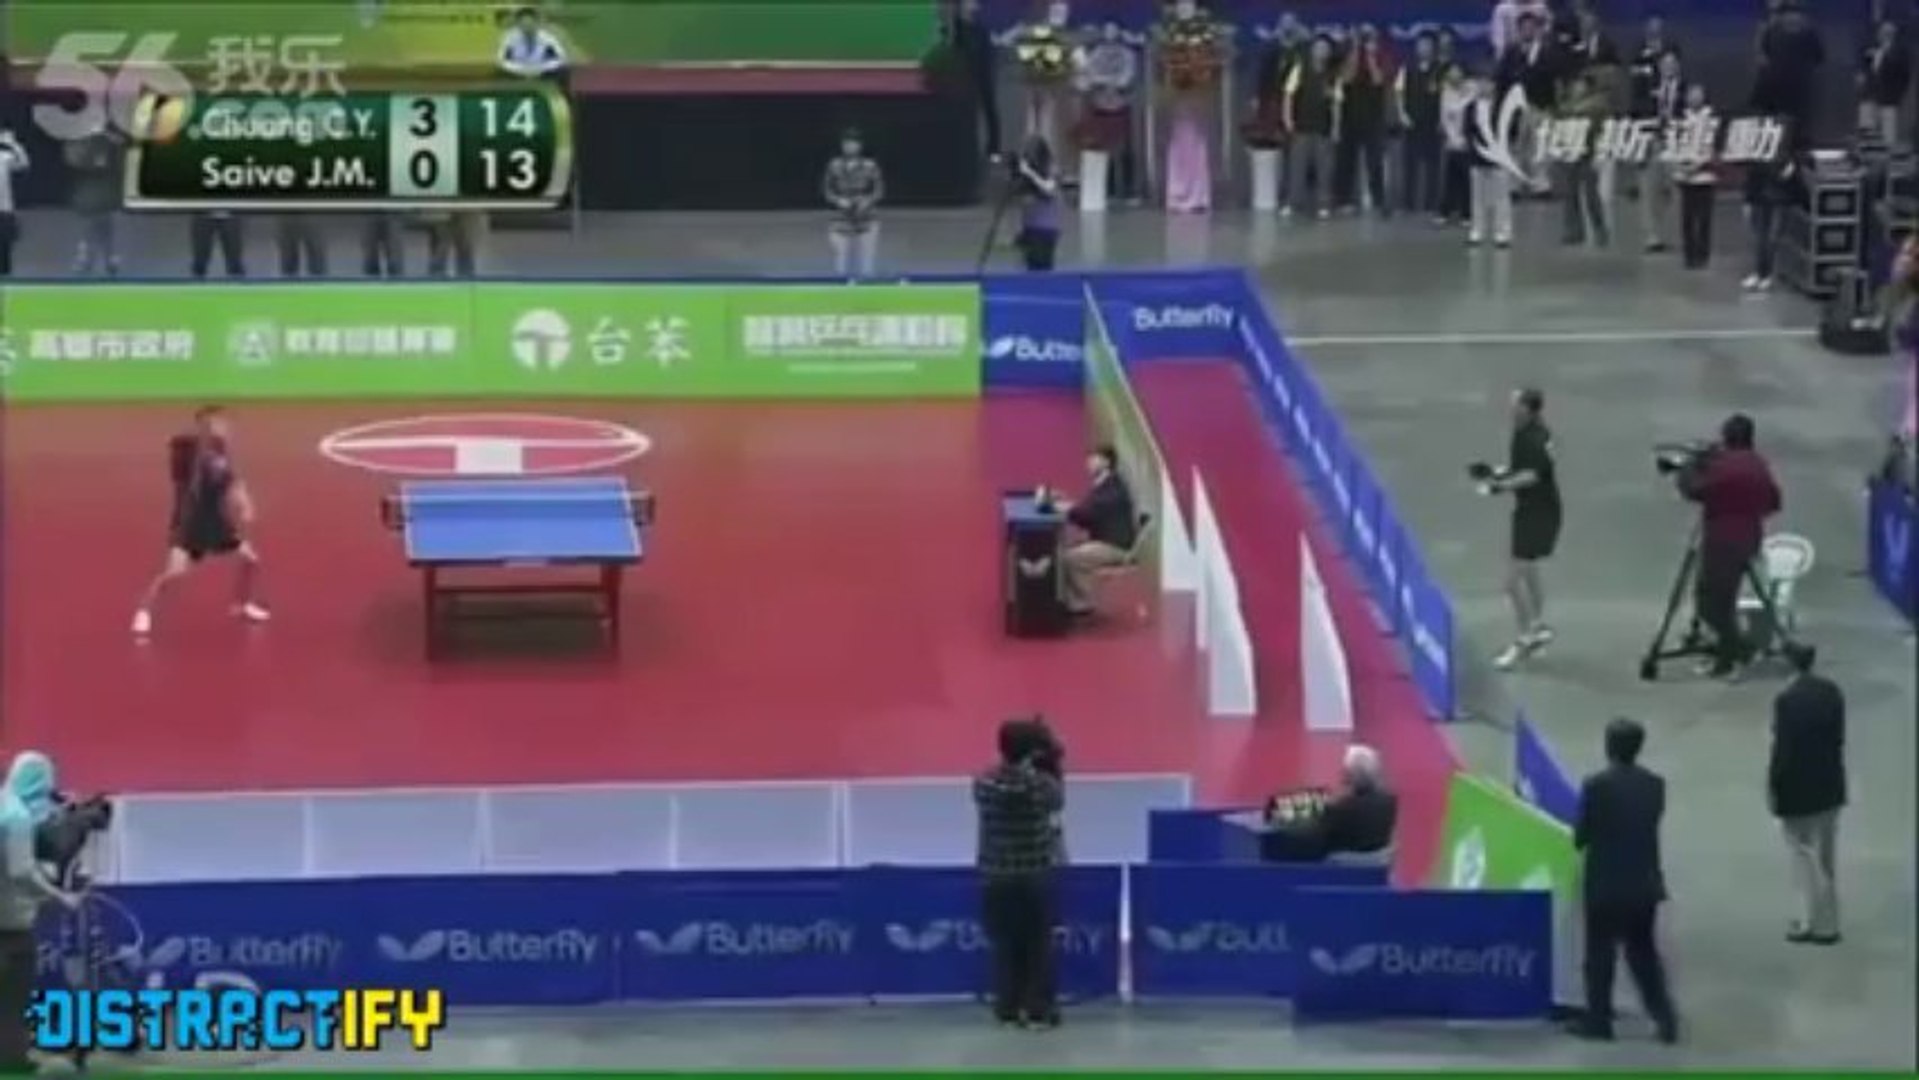 Un match de Ping Pong impressionnant! - Vidéo Dailymotion